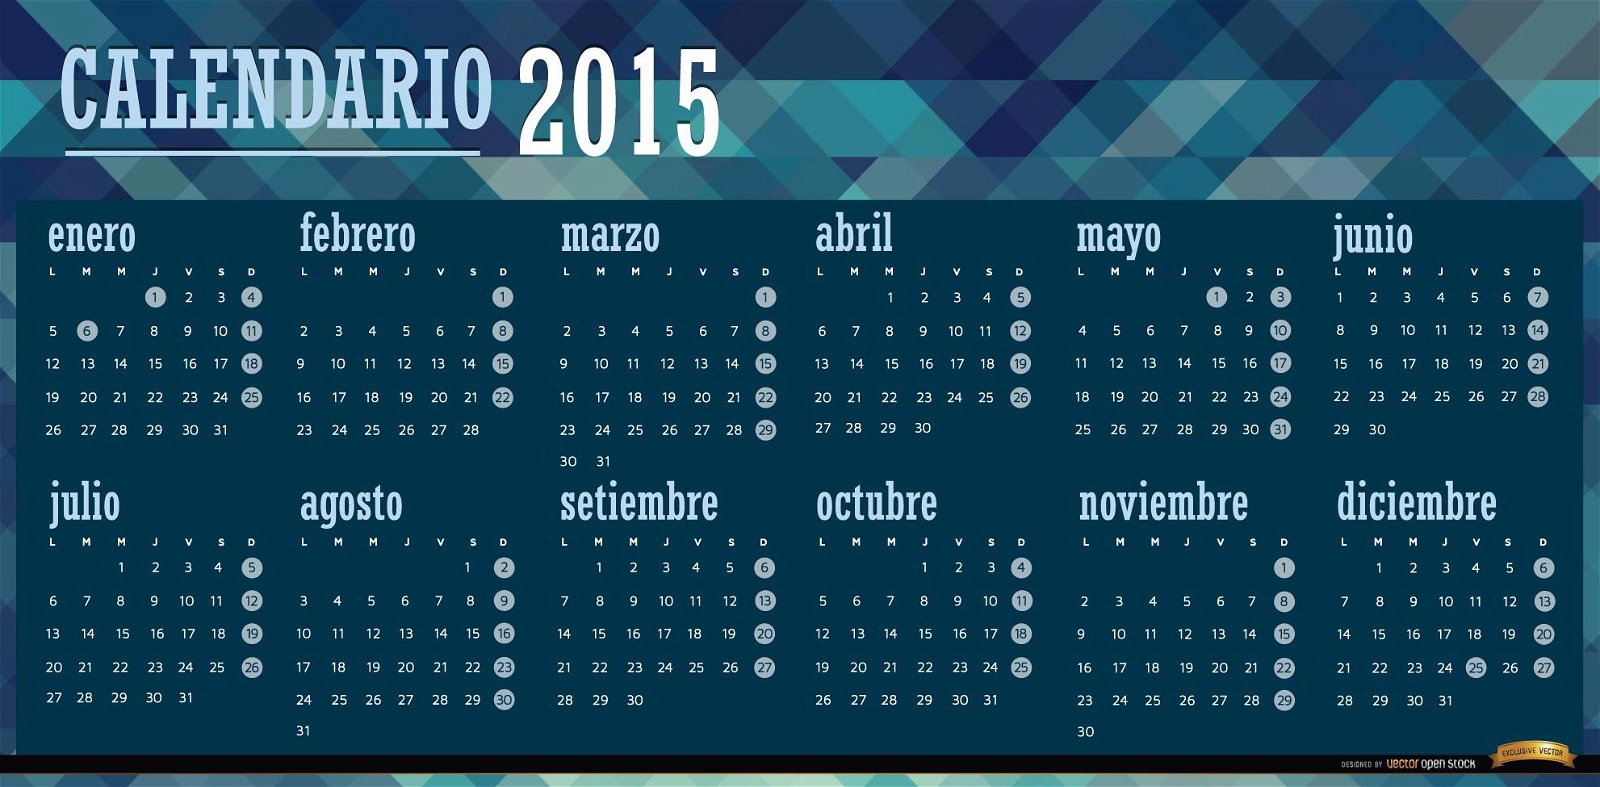 2015 calendario azul poligonal espa?ol